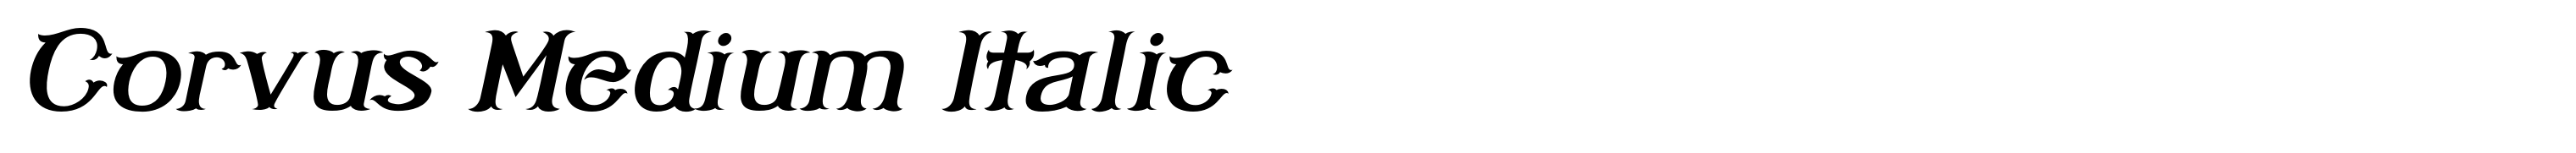 Corvus Medium Italic